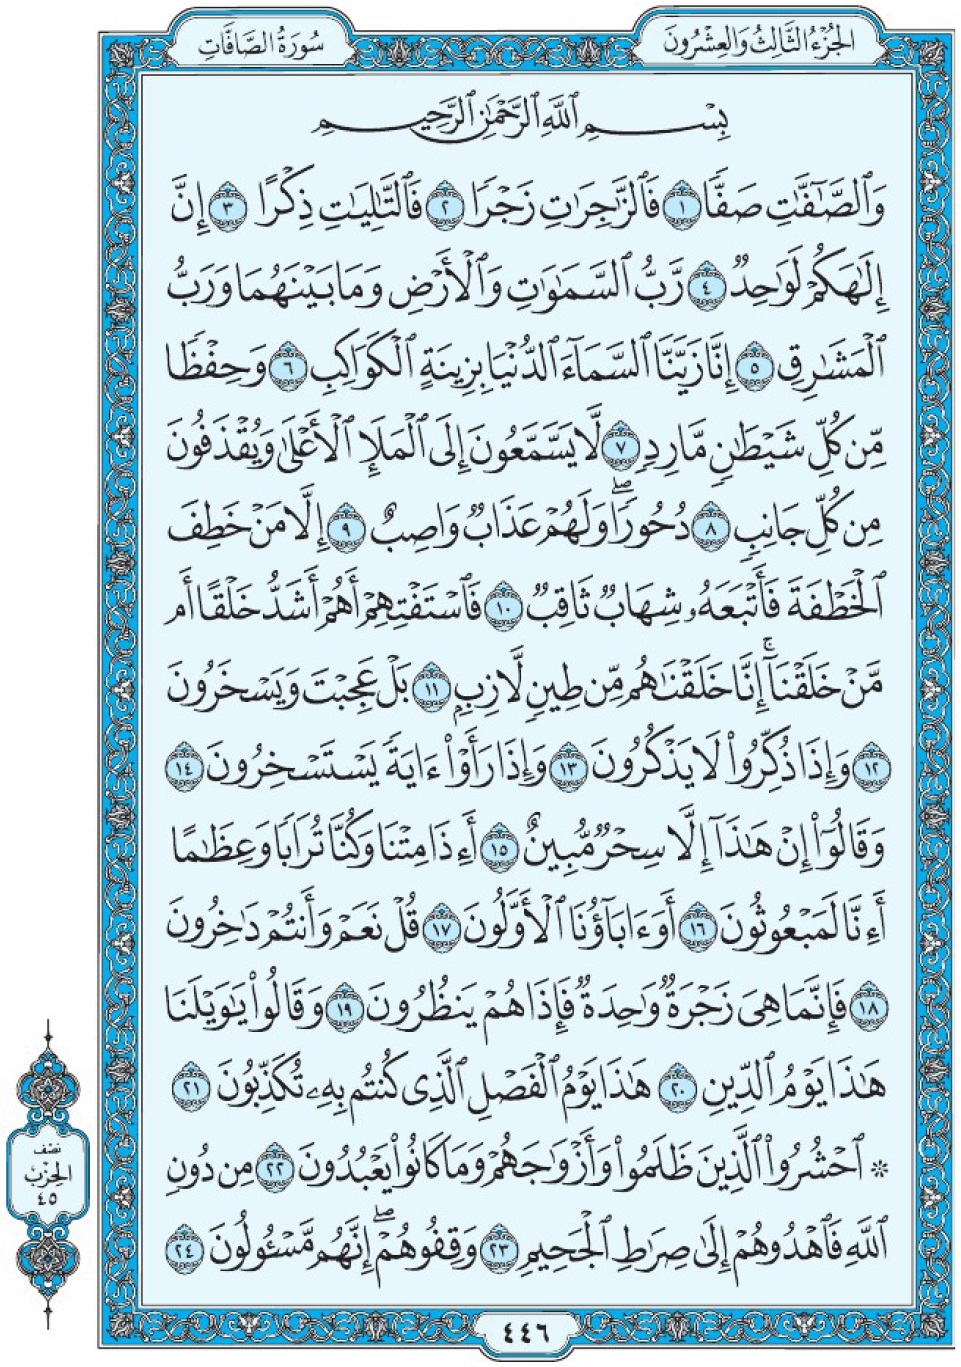 Коран Мединский мусхаф страница 446, сура 37 Ас-Саффат سورة ٣٧ الصافات 